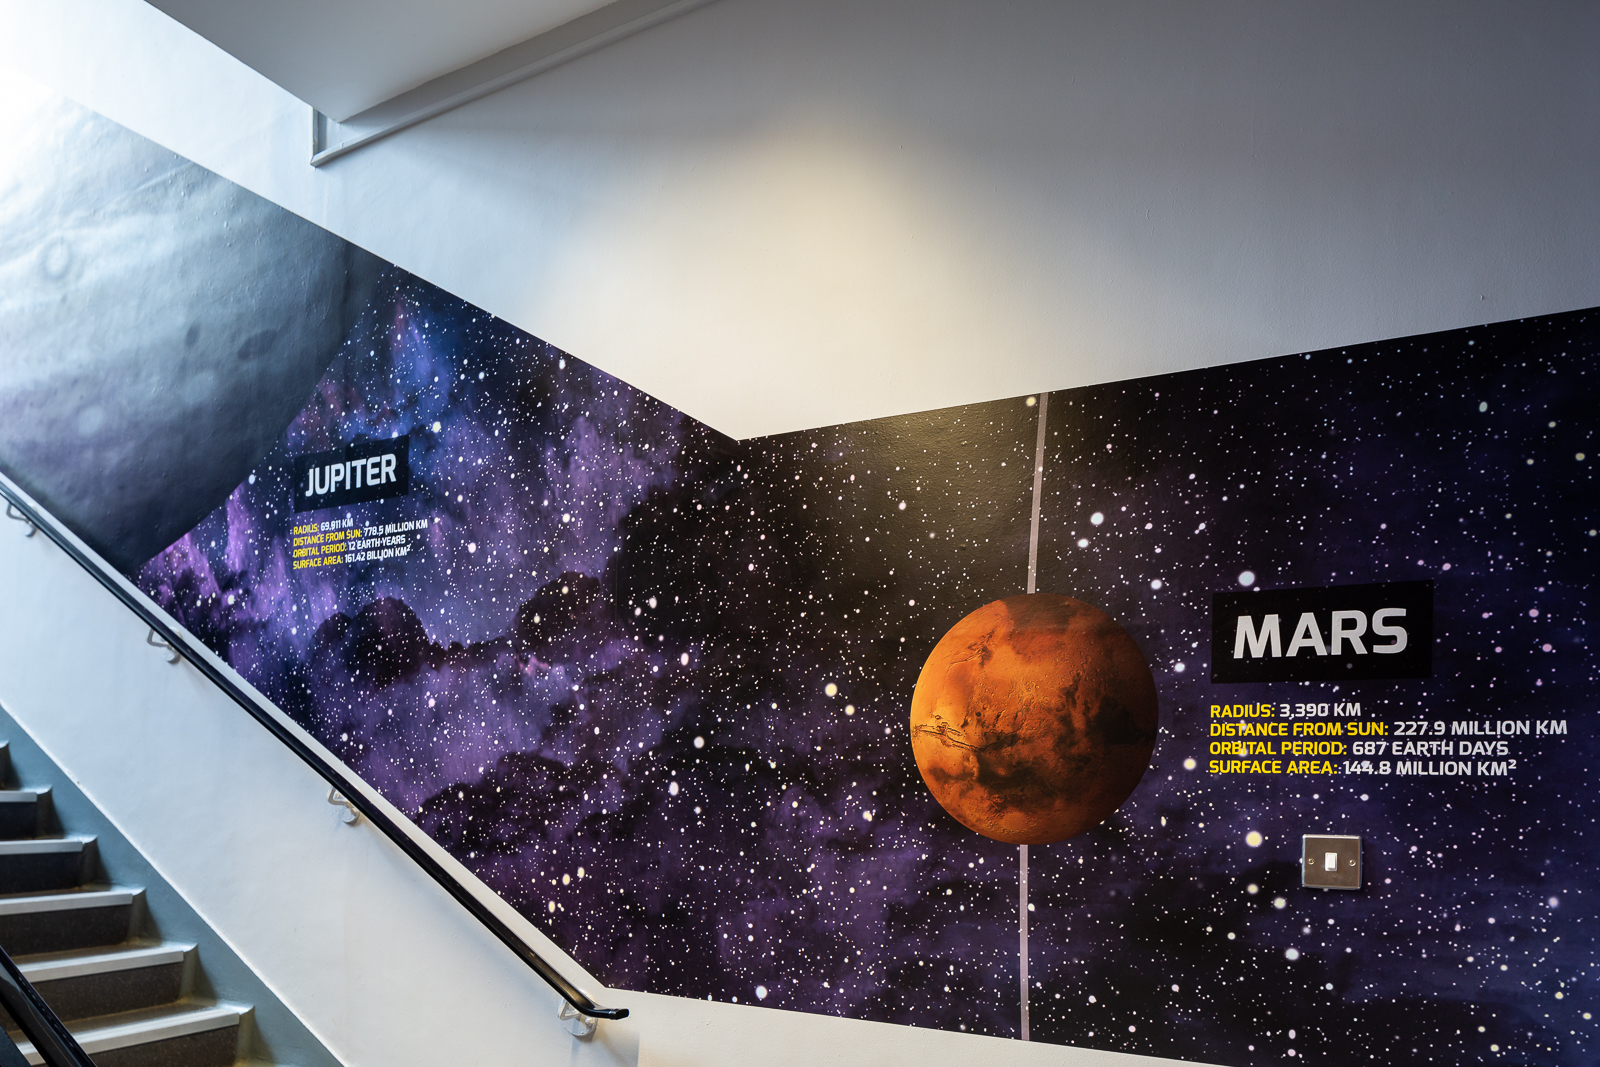 Solar system themed wall art in school corridor